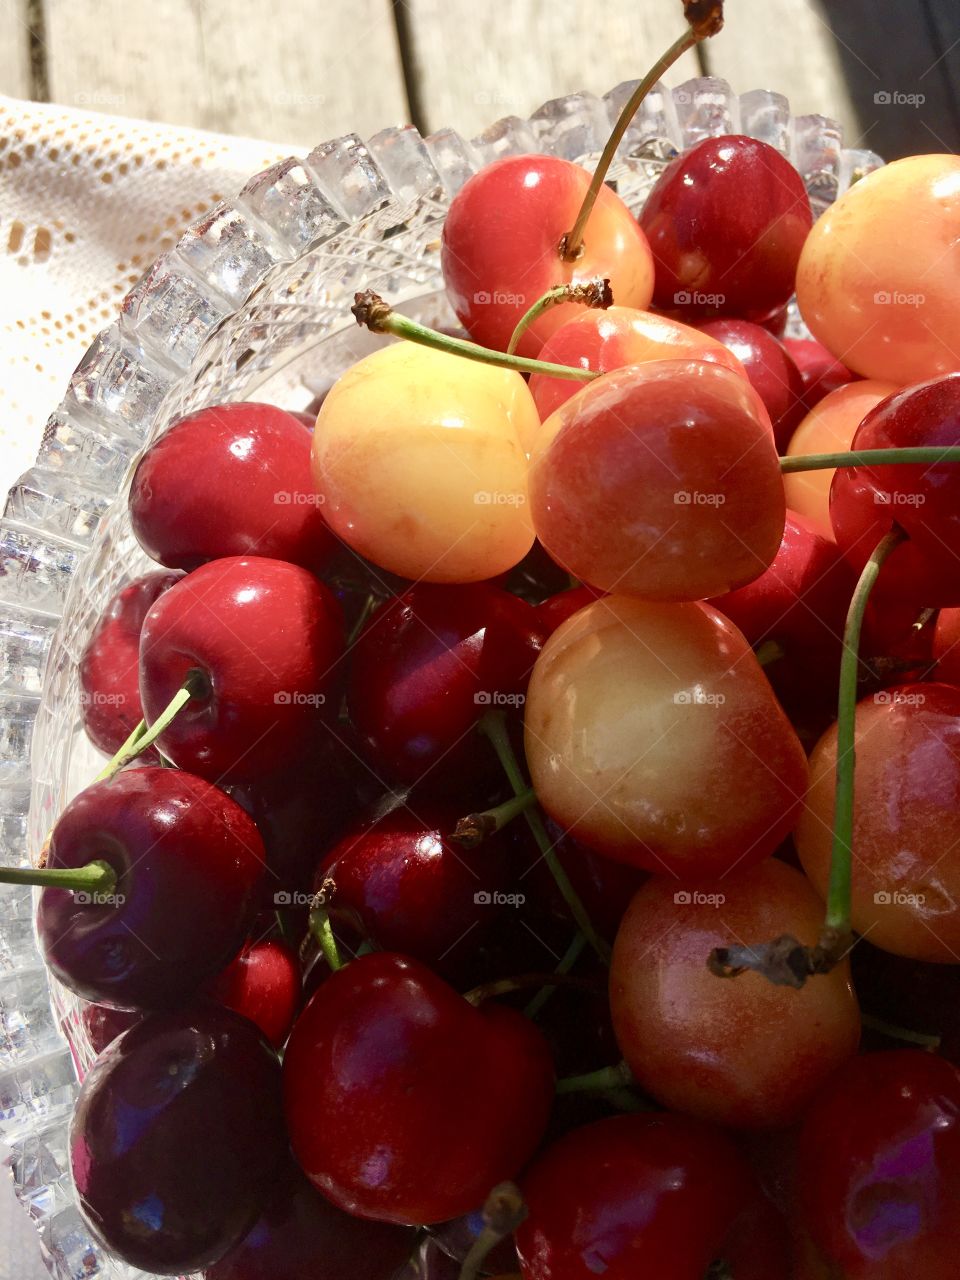 Crystal bowl of cherries 